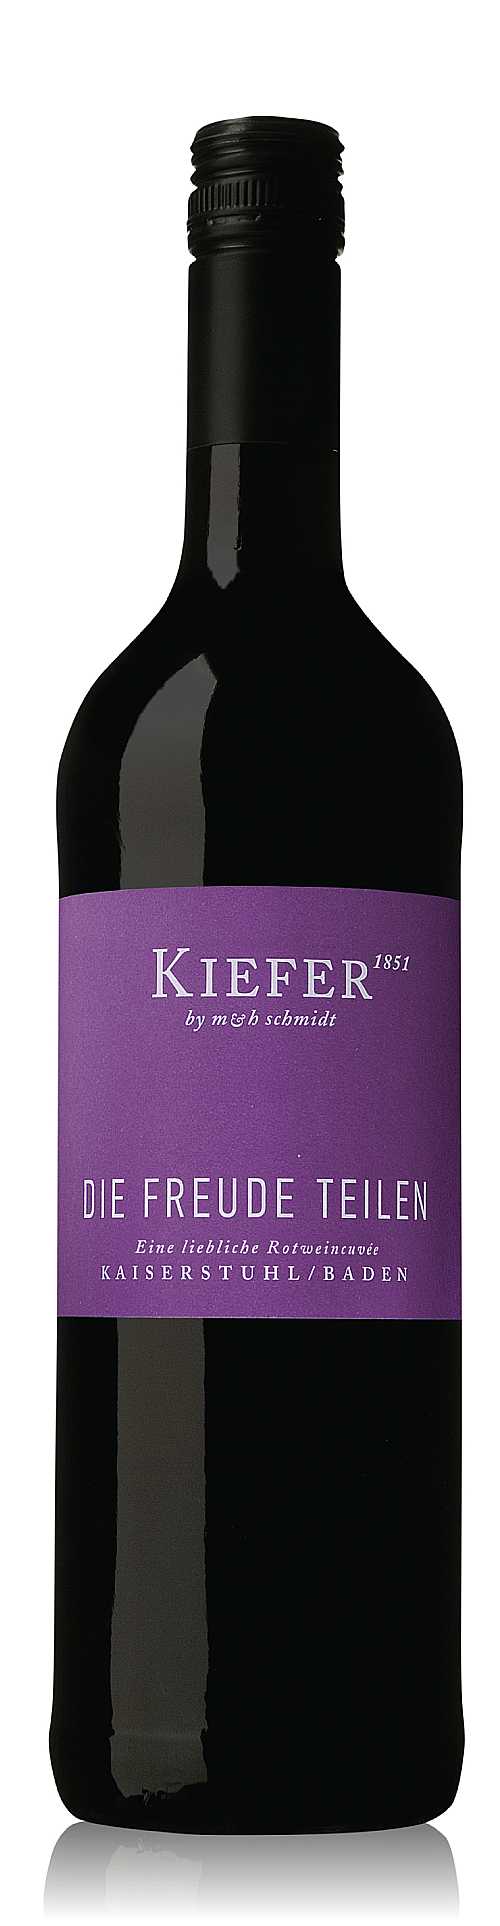 DIE FREUDE TEILEN; eine liebliche Rotweincuvée Weingut Kiefer Eichstetten am Kaiserstuhl